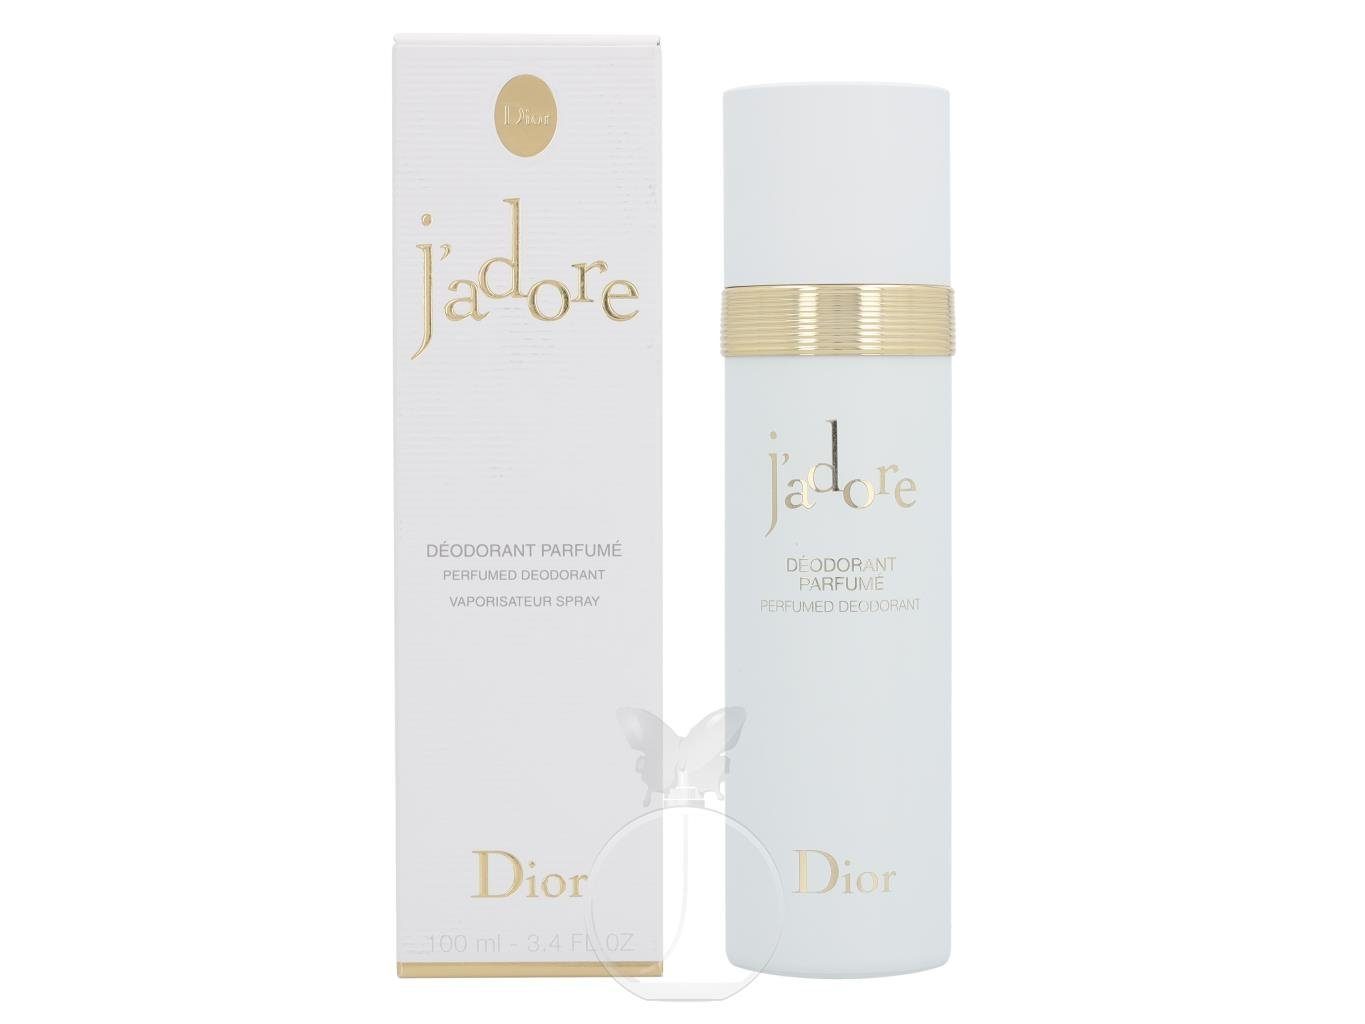 Dior Körperpflegeduft Dior J'adore Deodorant ml 100